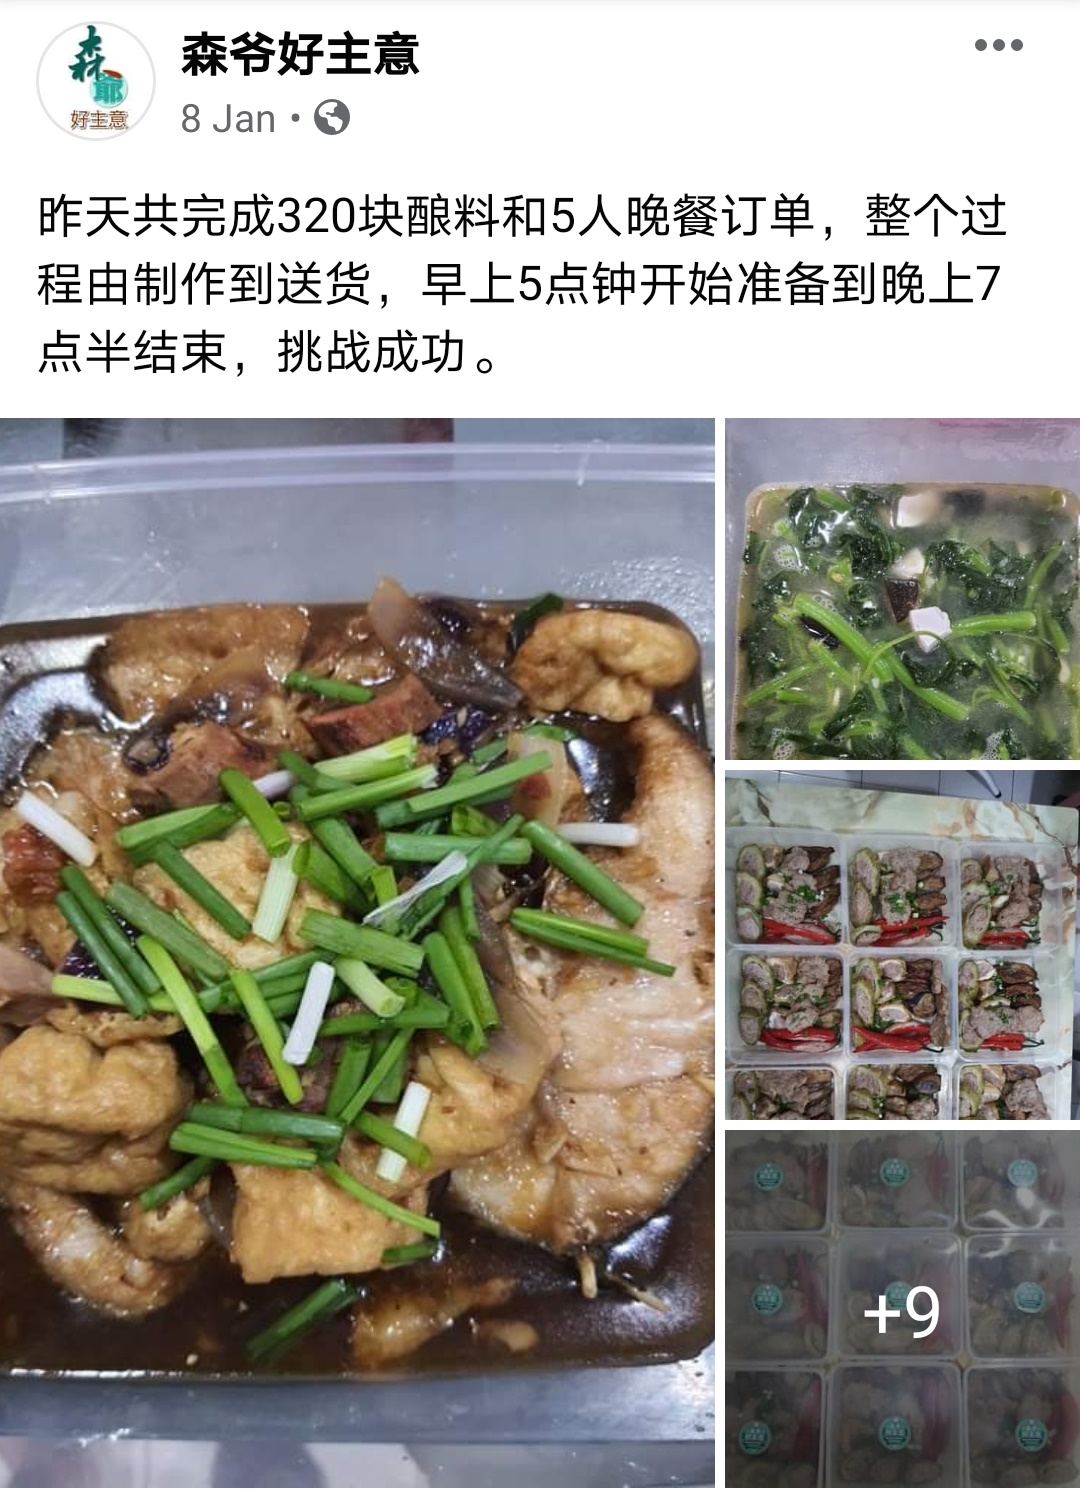 刘永森时常他所开设的脸书专页中分享美食，吸引网民垂涎，慢慢的就开拓了一个“私房菜”新路线。